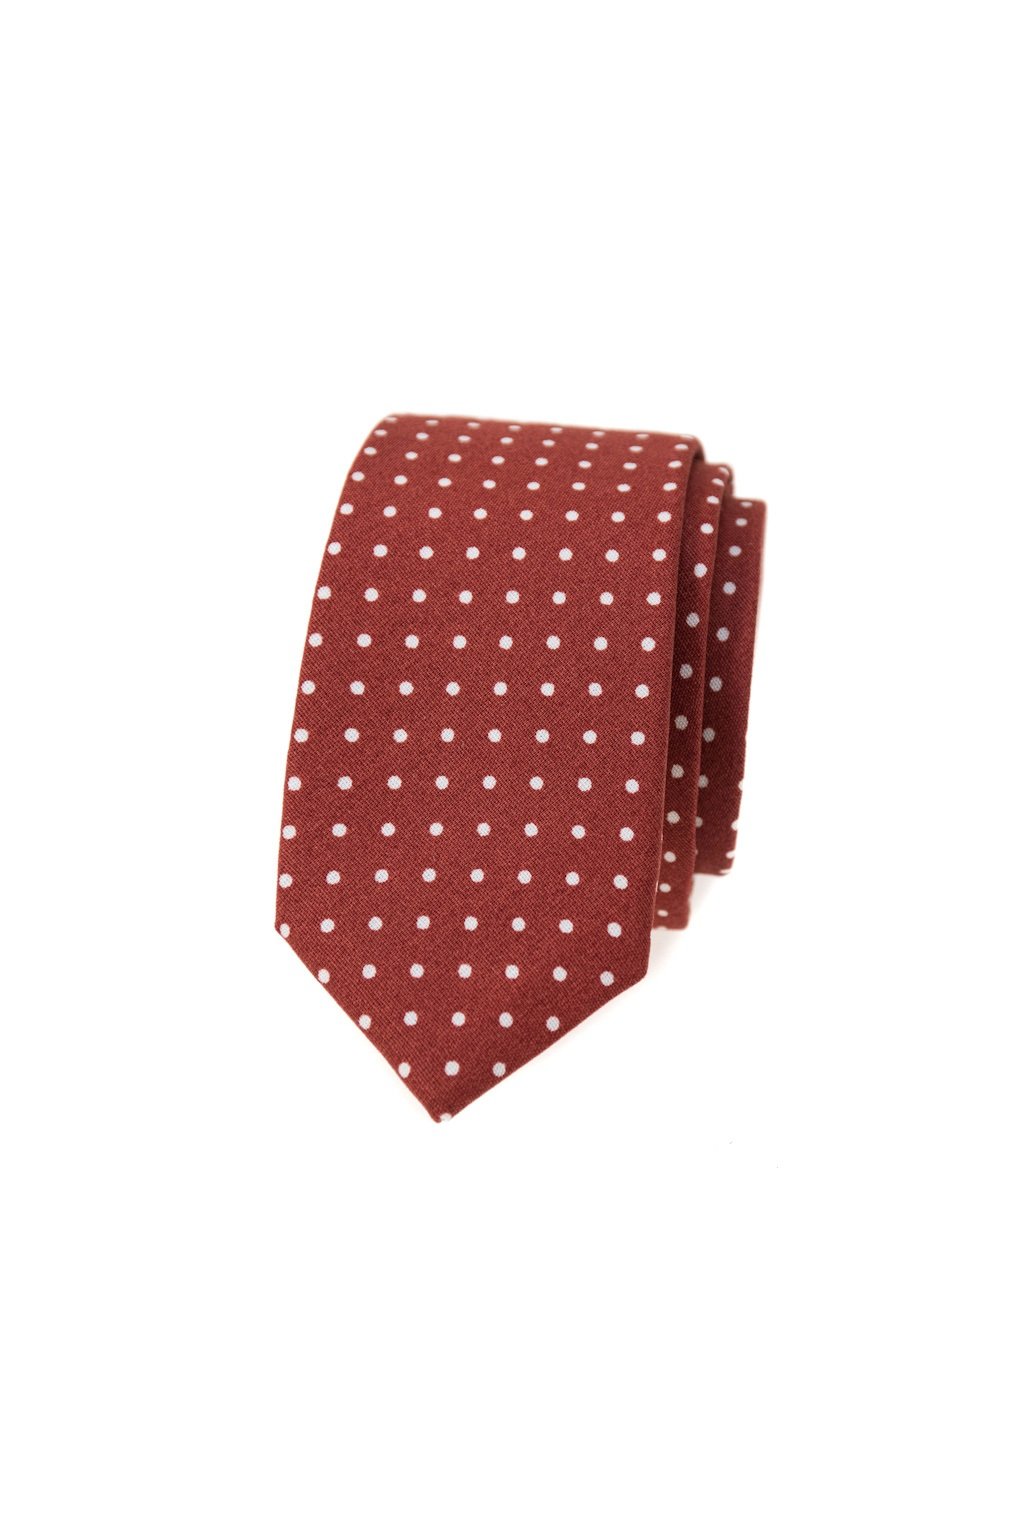 Úzká bavlněná kravata Avantgard - skořicová / puntík